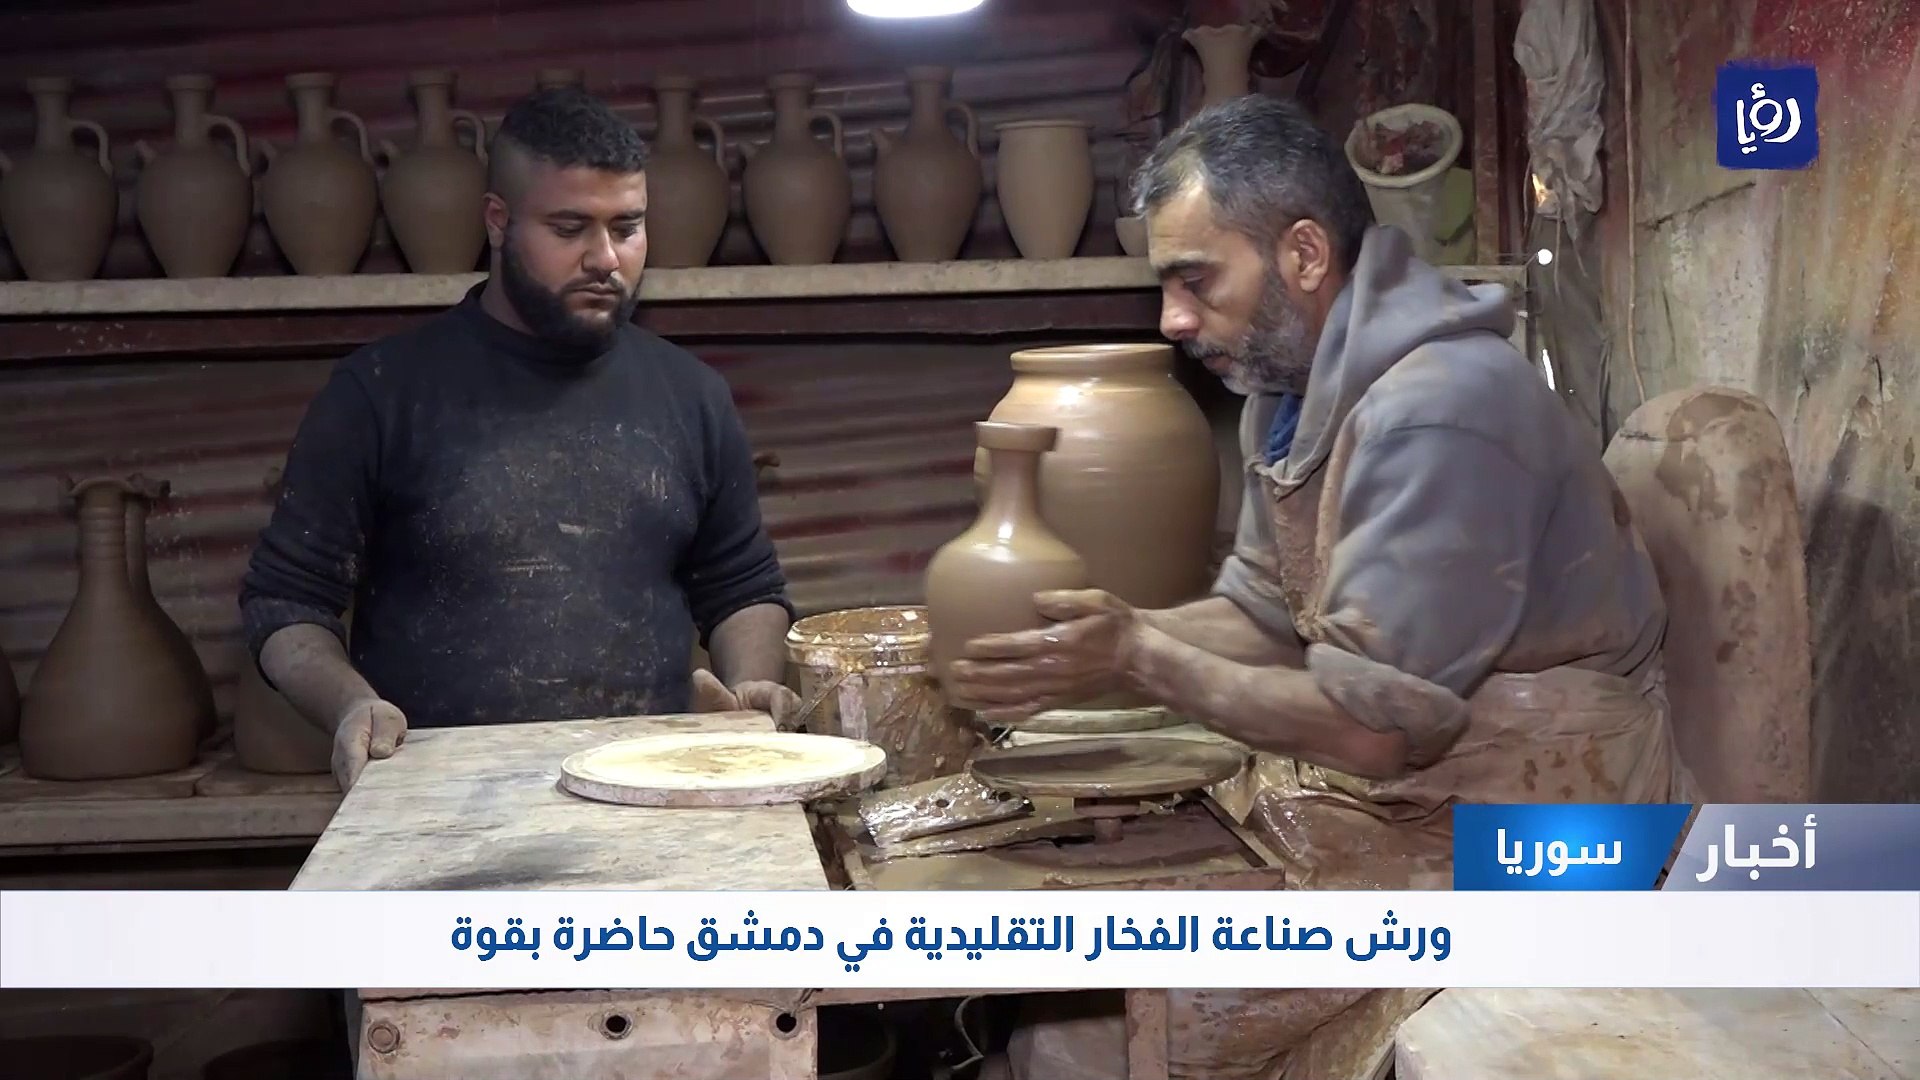 ورش صناعة الفخار التقليدية في دمشق حاضرة بقوة - فيديو Dailymotion